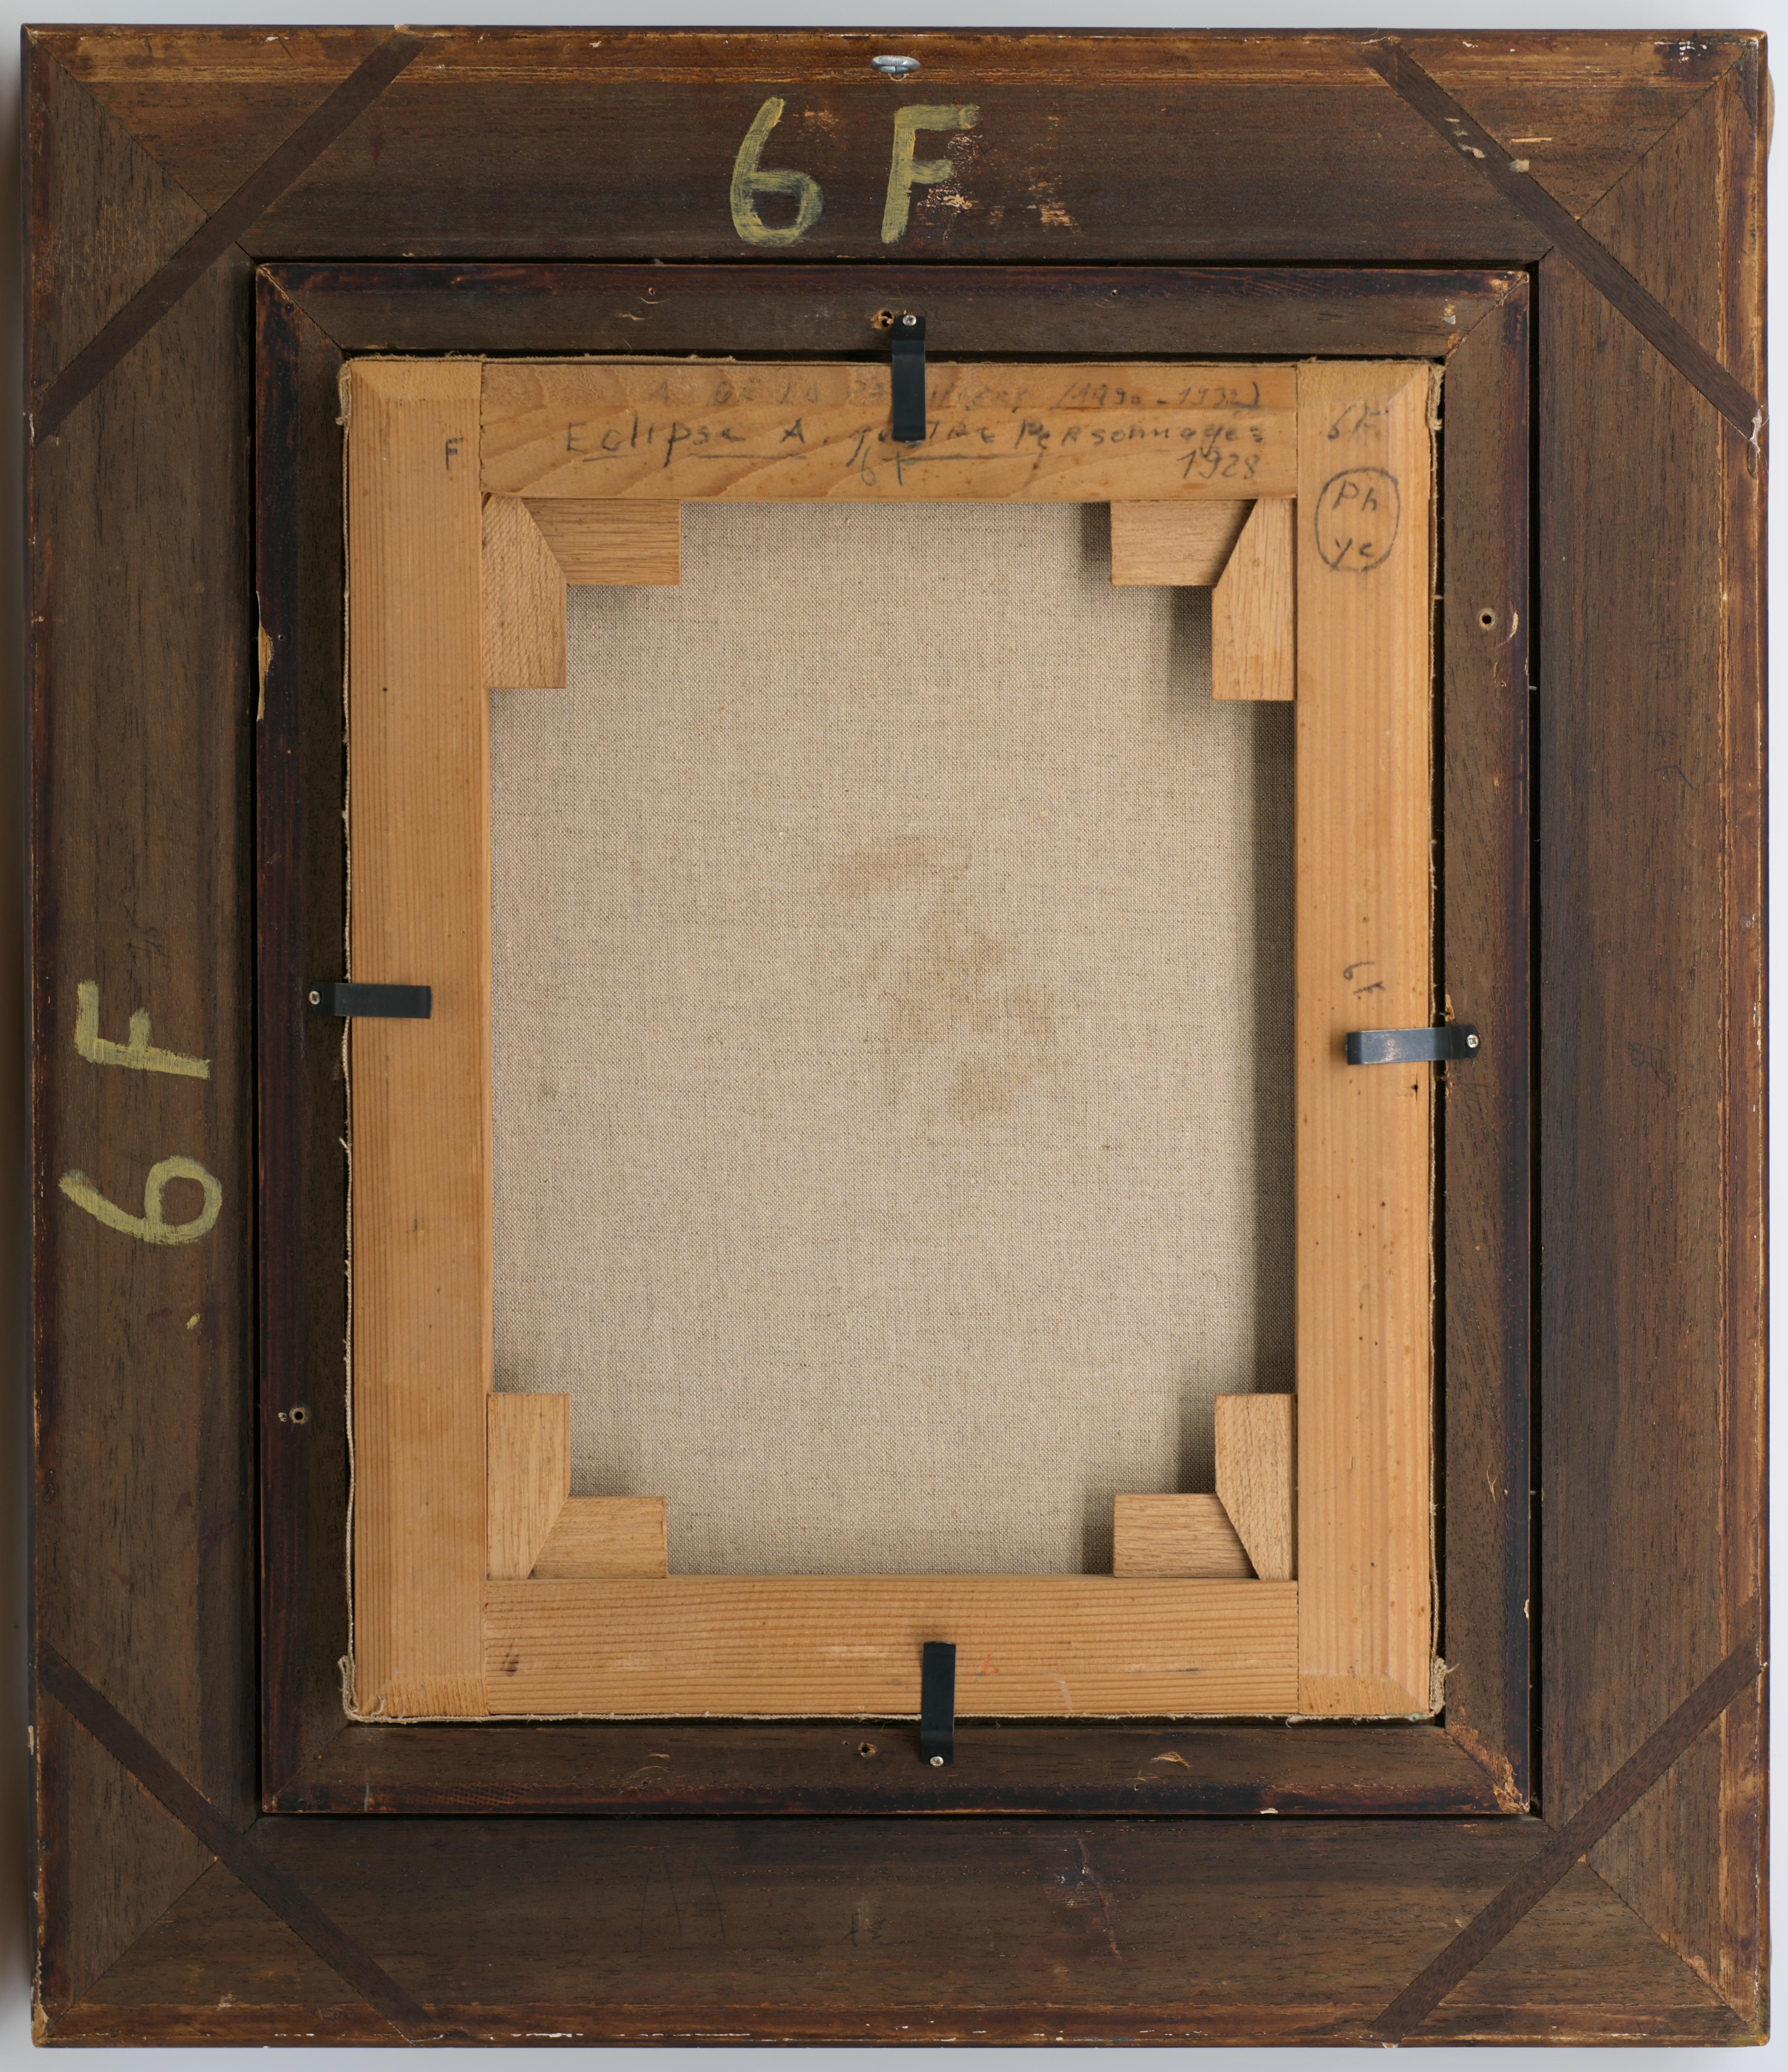 Öl auf Leinwand von Amedee de La PATELLIERE, Frankreich, 1928. Eklipse mit vier Zeichen. Mit Rahmen: 63x54 cm - 24.8x21.25 inches ; ohne Rahmen: 41x33 cm - 16.15x13 inches. Format 6F. Signiert unten rechts 